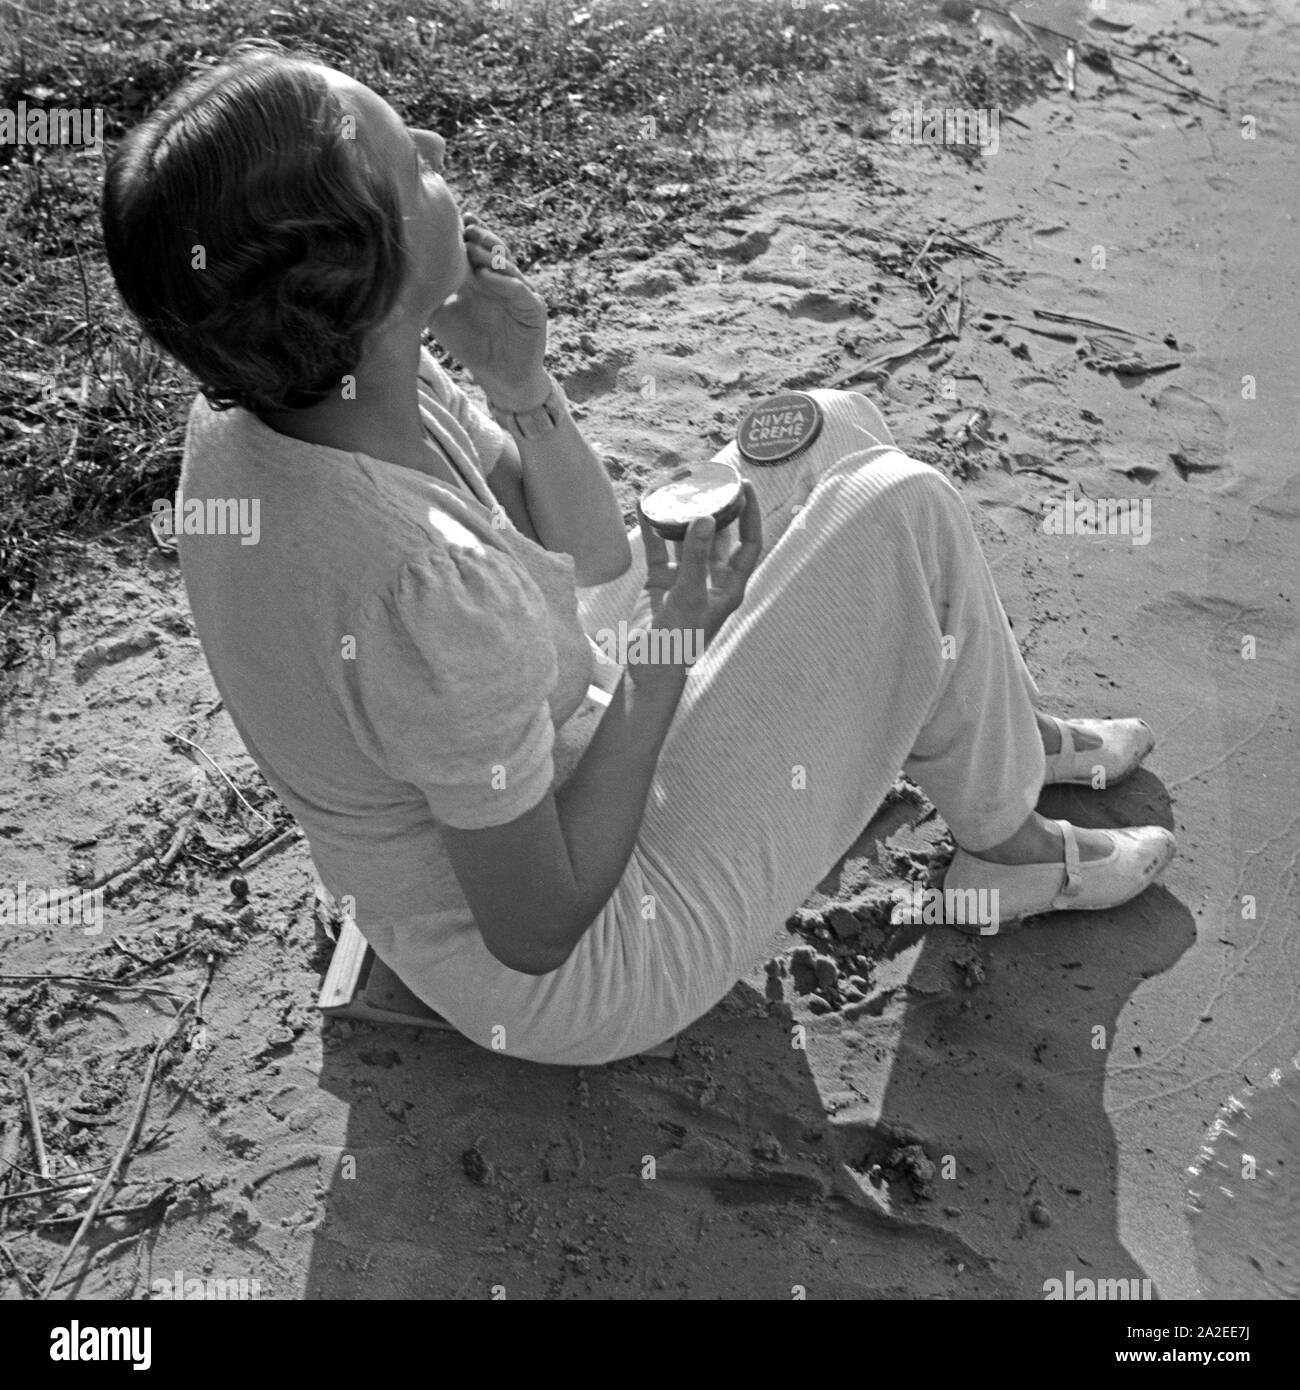 Einen guten Schutz gegen Sonnenbrand bietet crema Nivea, eine junge Frau am Ufer eines vede , Deutschland 1930er Jahre. Una crema Nivea protegge le scottature, giovane donna creaming, Germania 1930s. Foto Stock